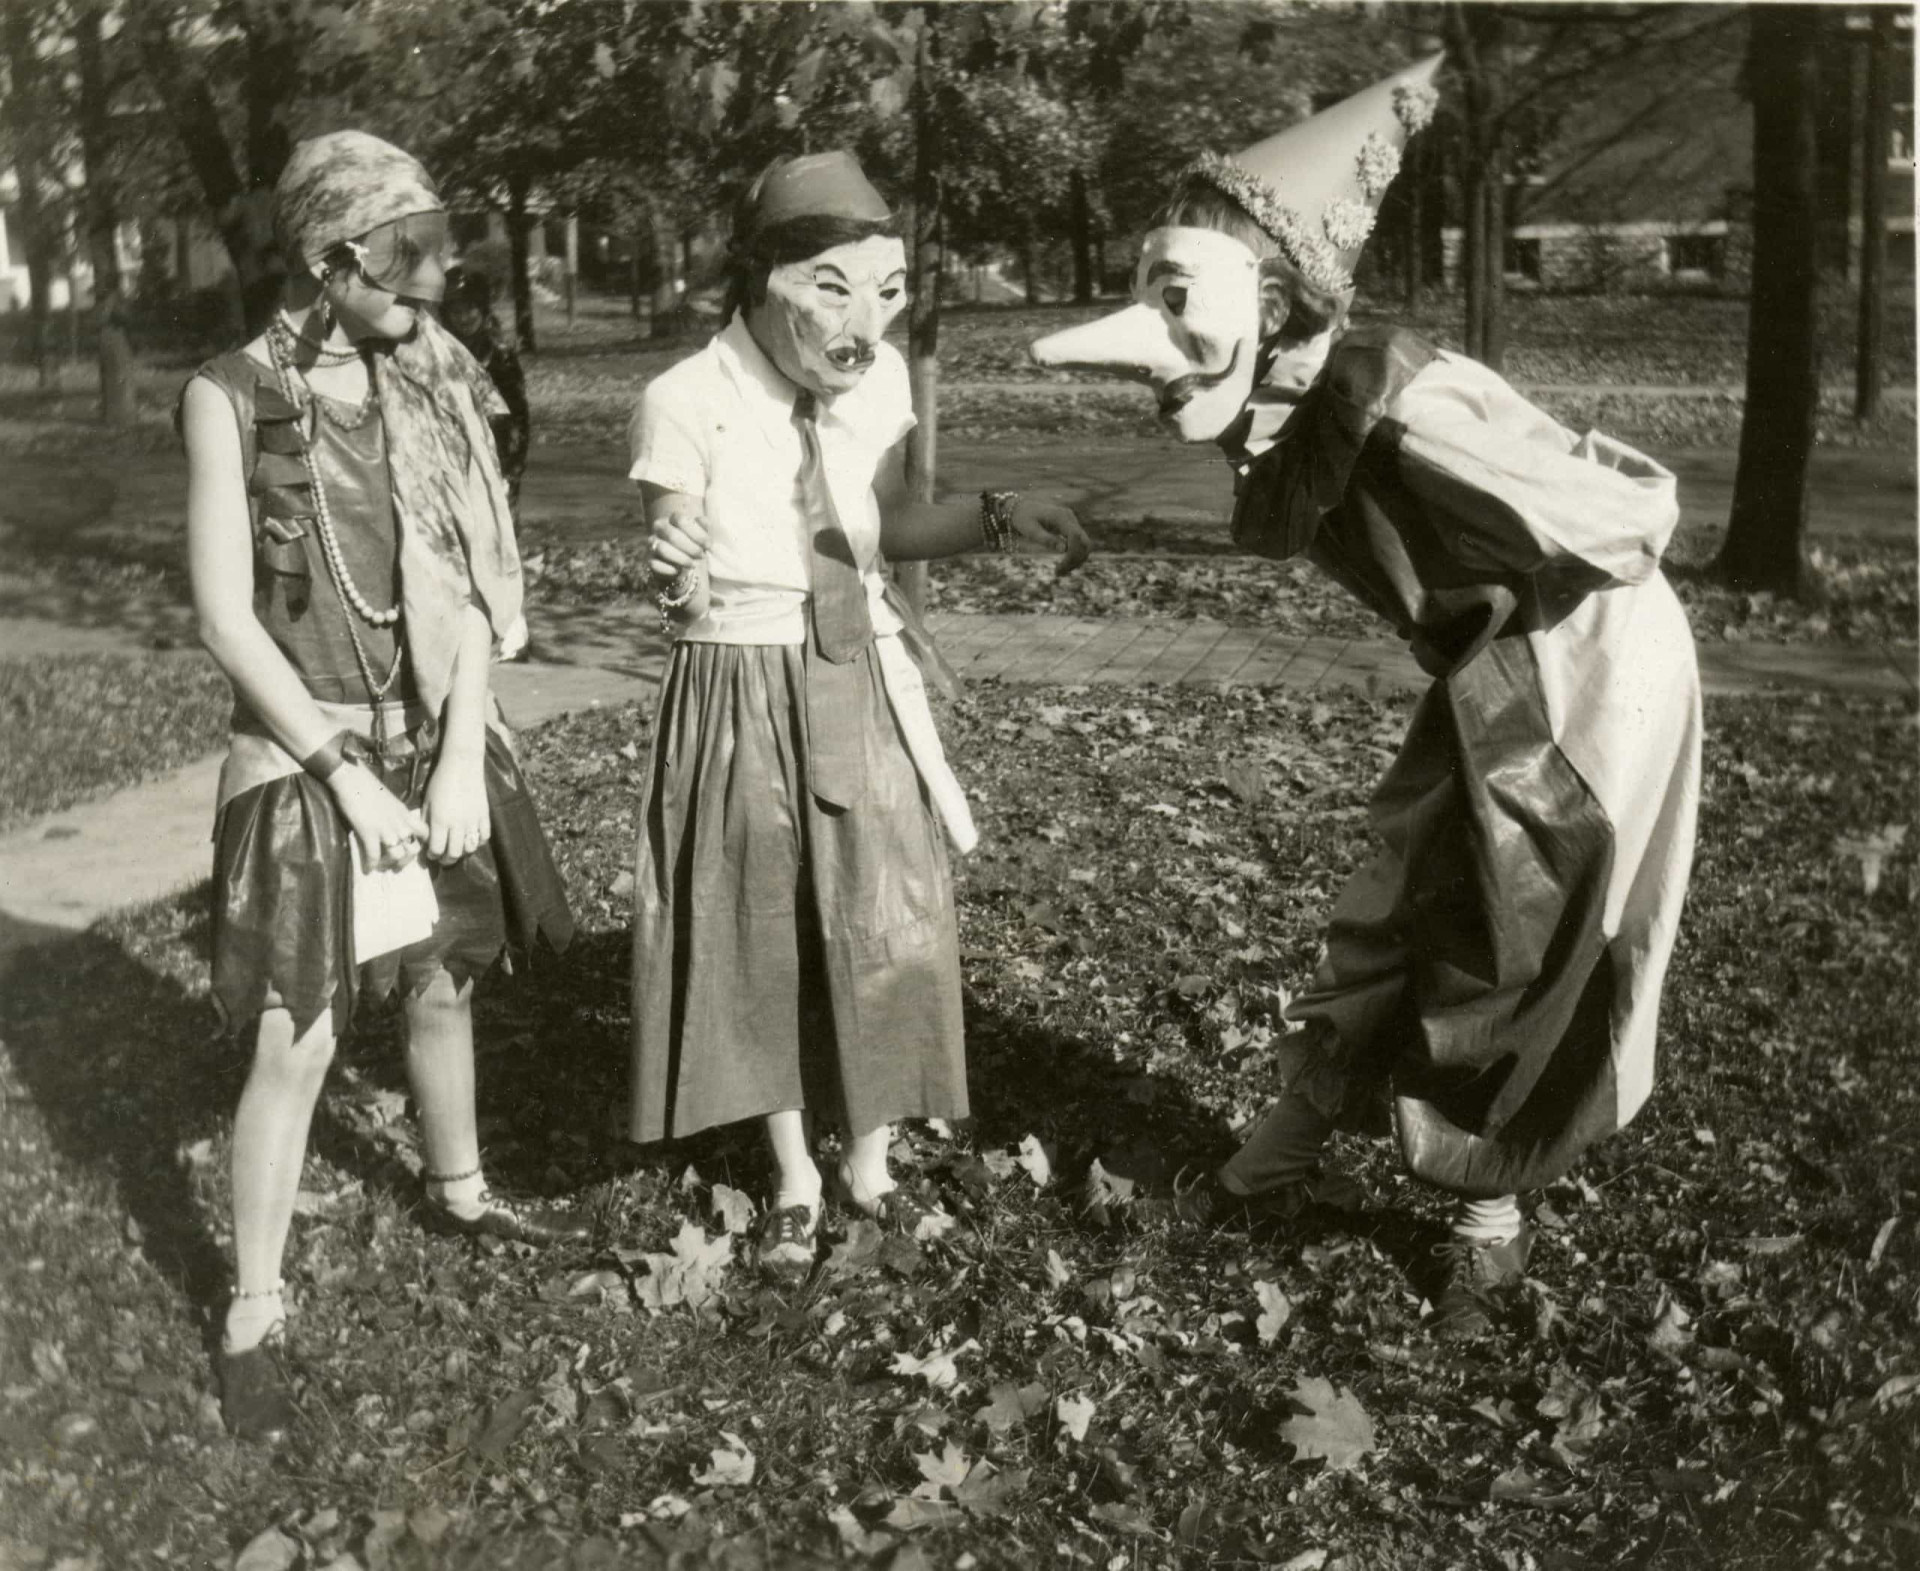 Fotos: Fotos antigas mostram fantasias bizarras para o Dia das Bruxas -  30/10/2012 - UOL Notícias